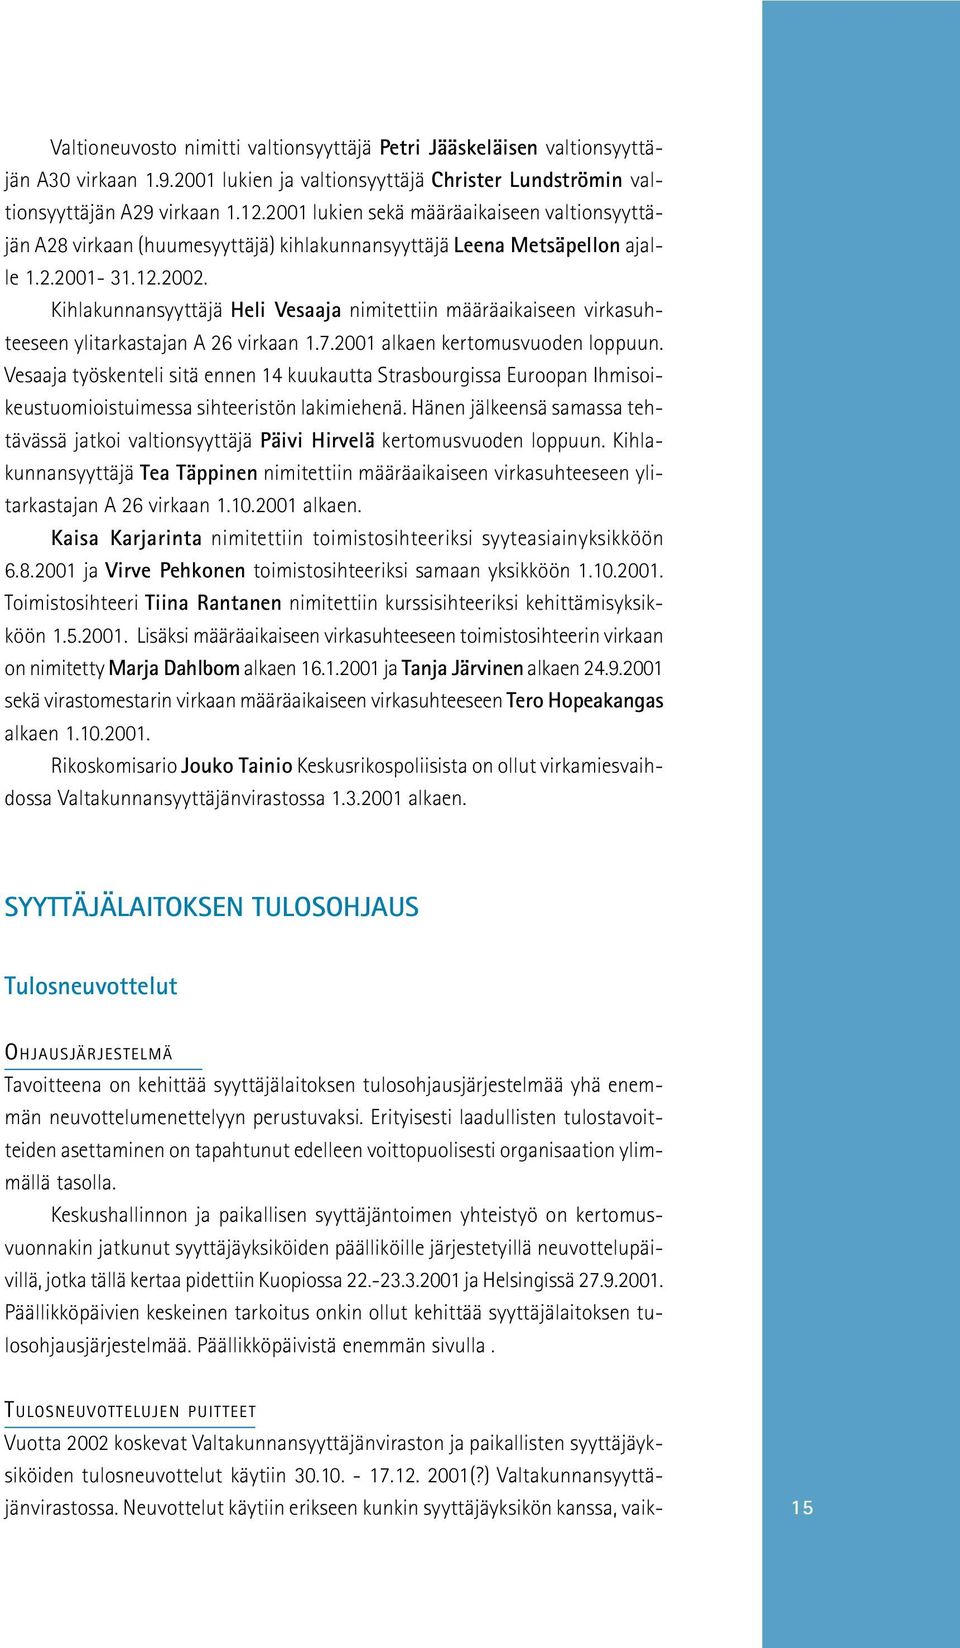 Kihlakunnansyyttäjä Heli Vesaaja nimitettiin määräaikaiseen virkasuhteeseen ylitarkastajan A 26 virkaan 1.7.2001 alkaen kertomusvuoden loppuun.